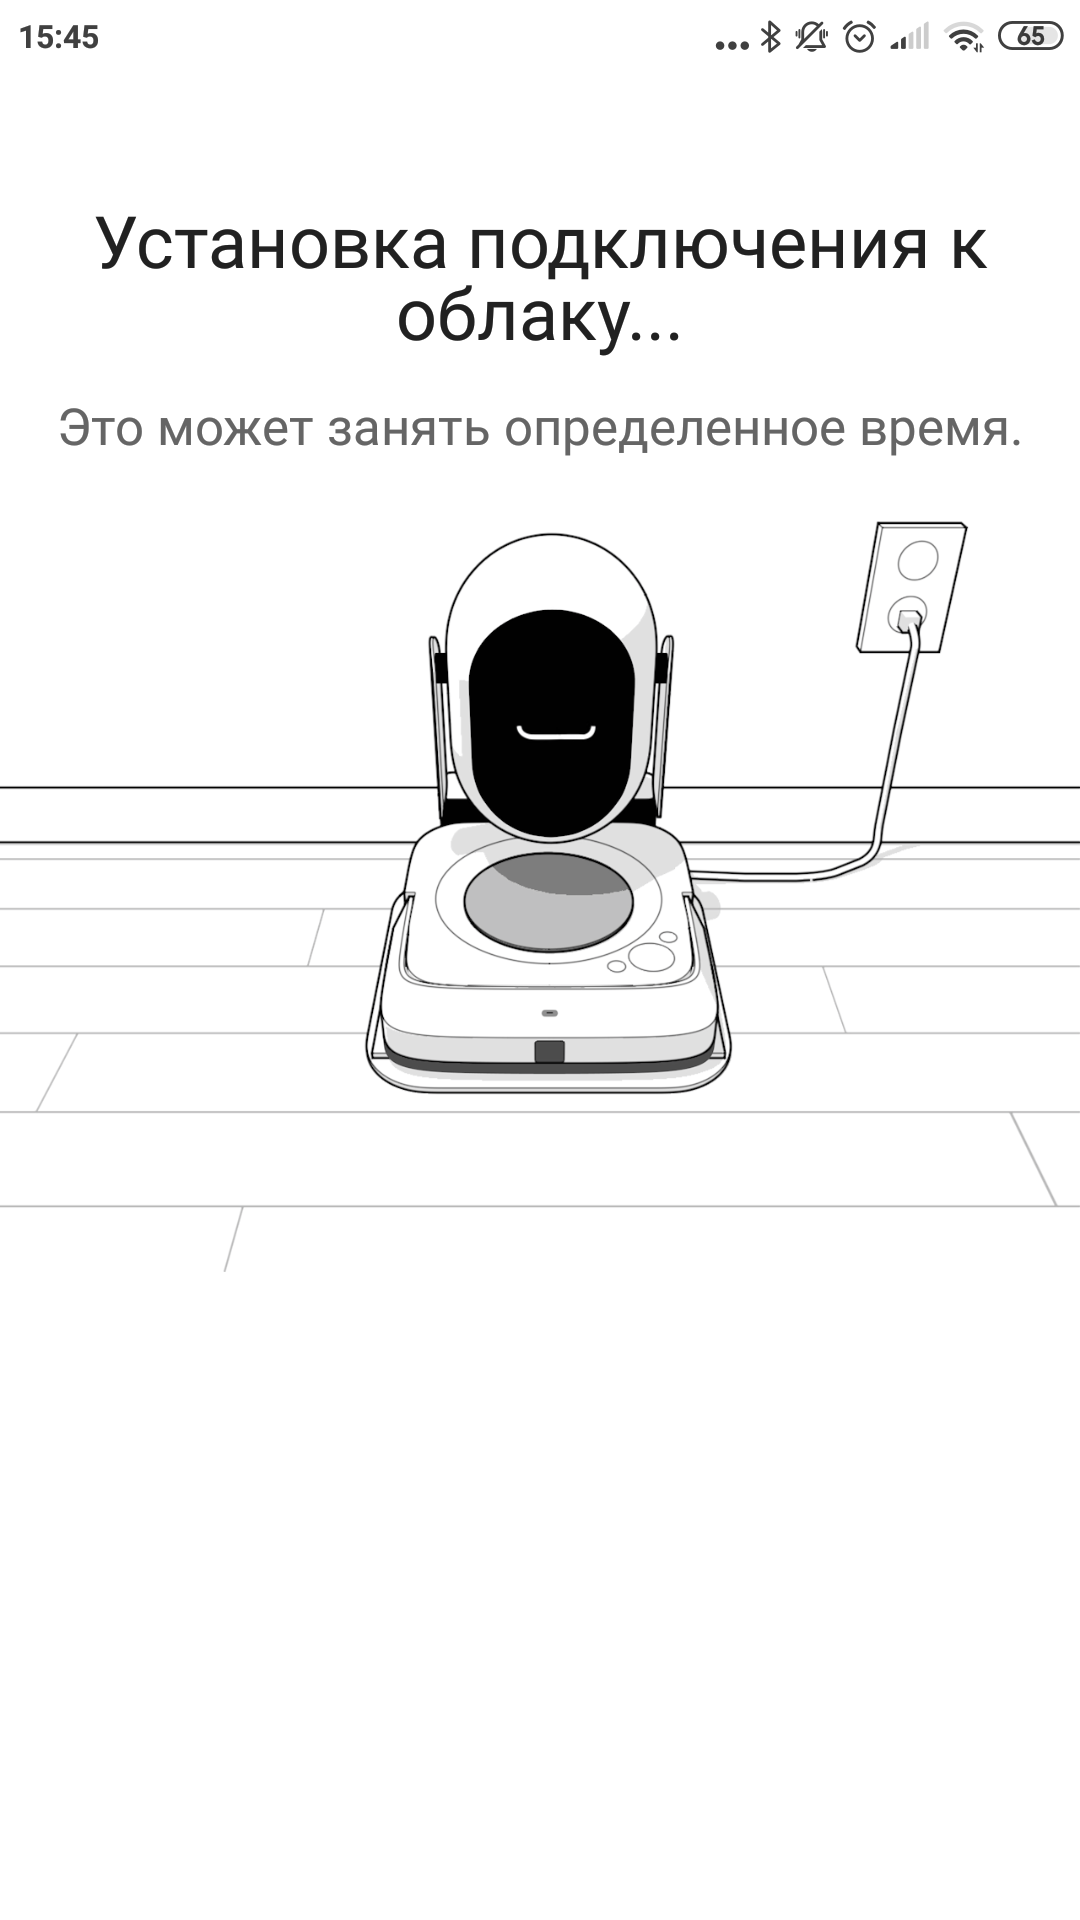 Обзор роботов-уборщиков iRobot Roomba s9+ и Braava jet m6: парное катание-59